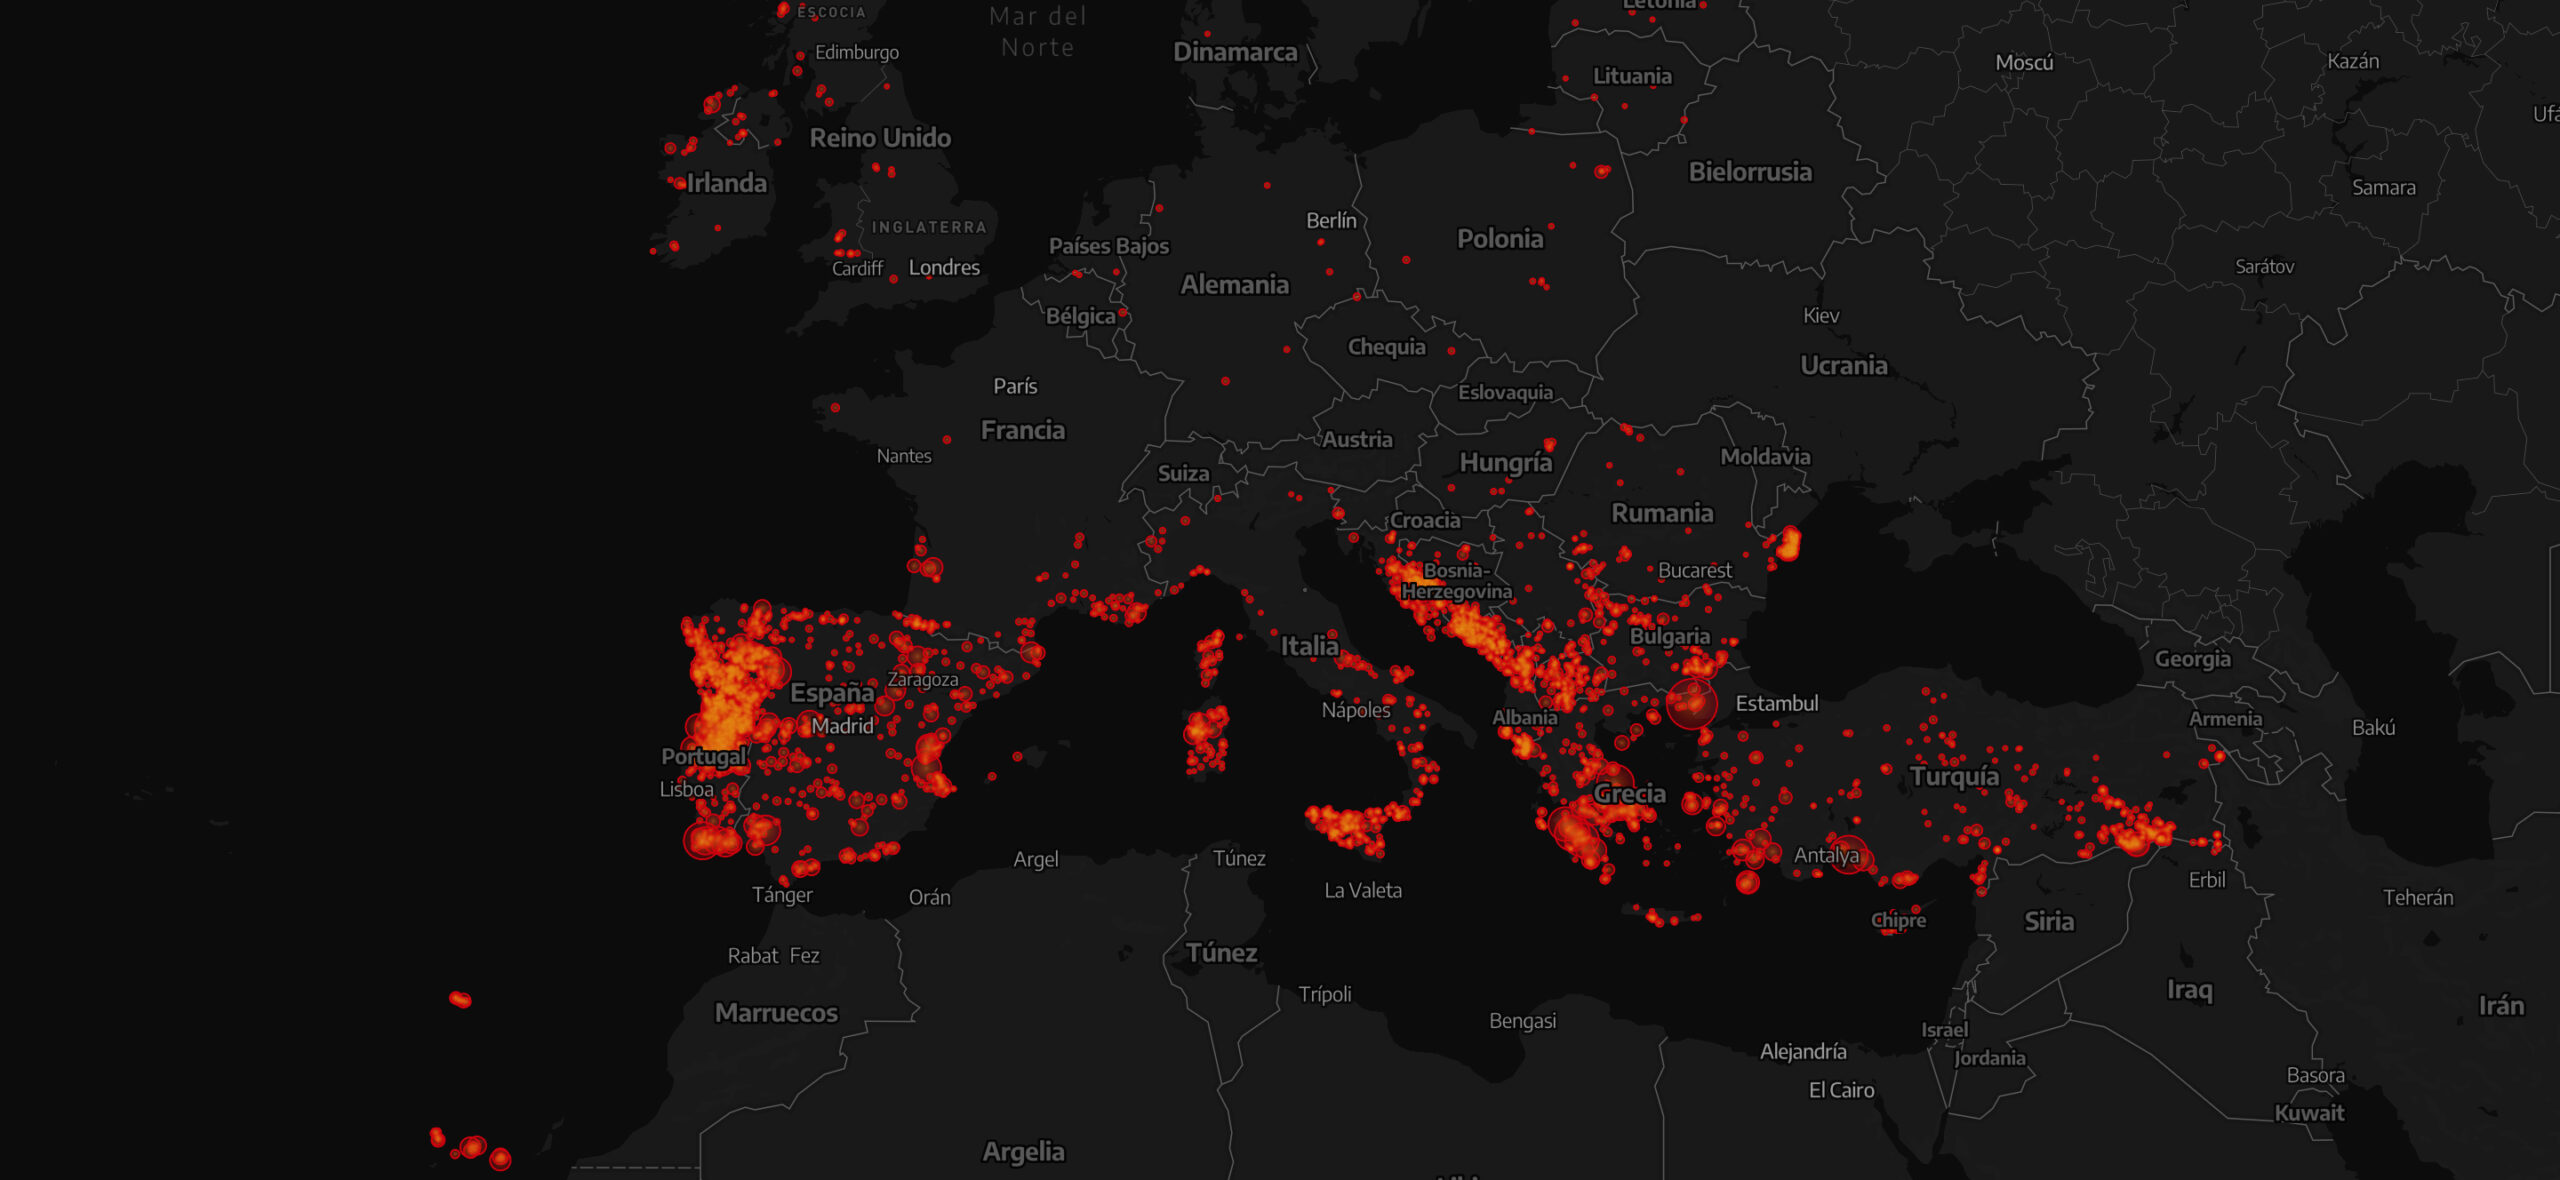 Des méga-incendies ravagent l’Europe. Sommes-nous prêts ?